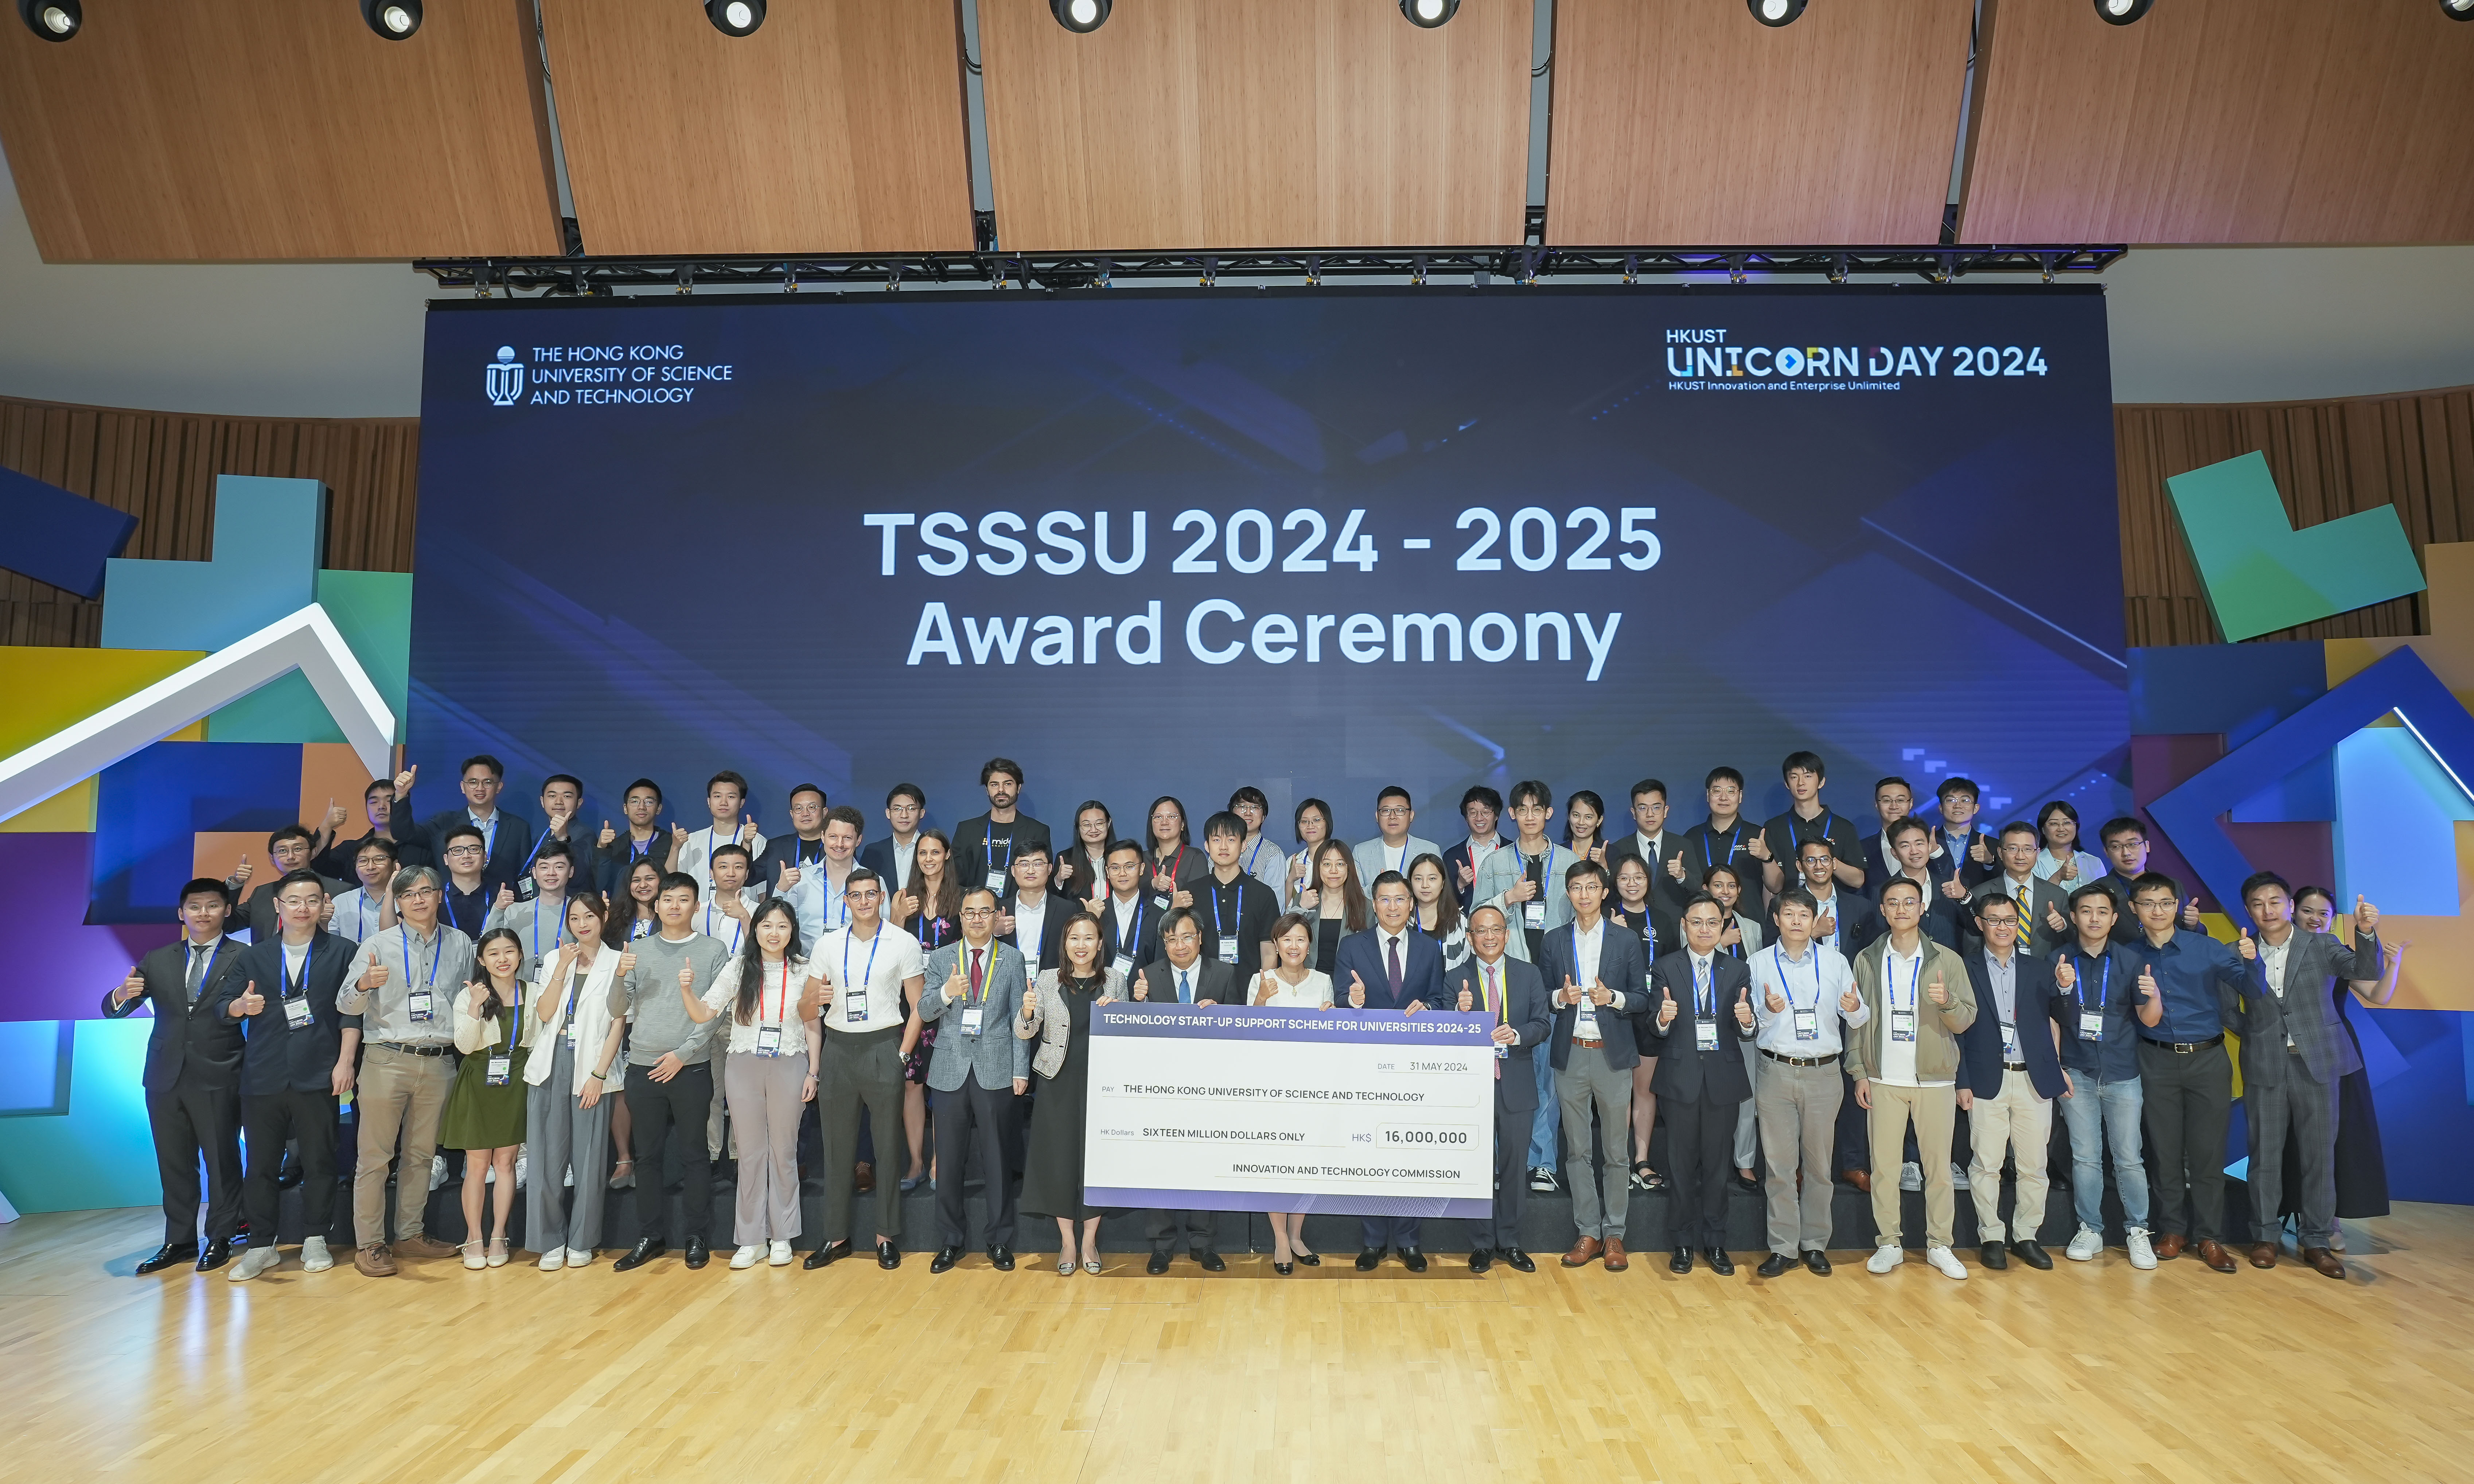 34队入选最新一轮“大学科技初创企业资助计划”(TSSSU)的项目亦于活动上获嘉许。